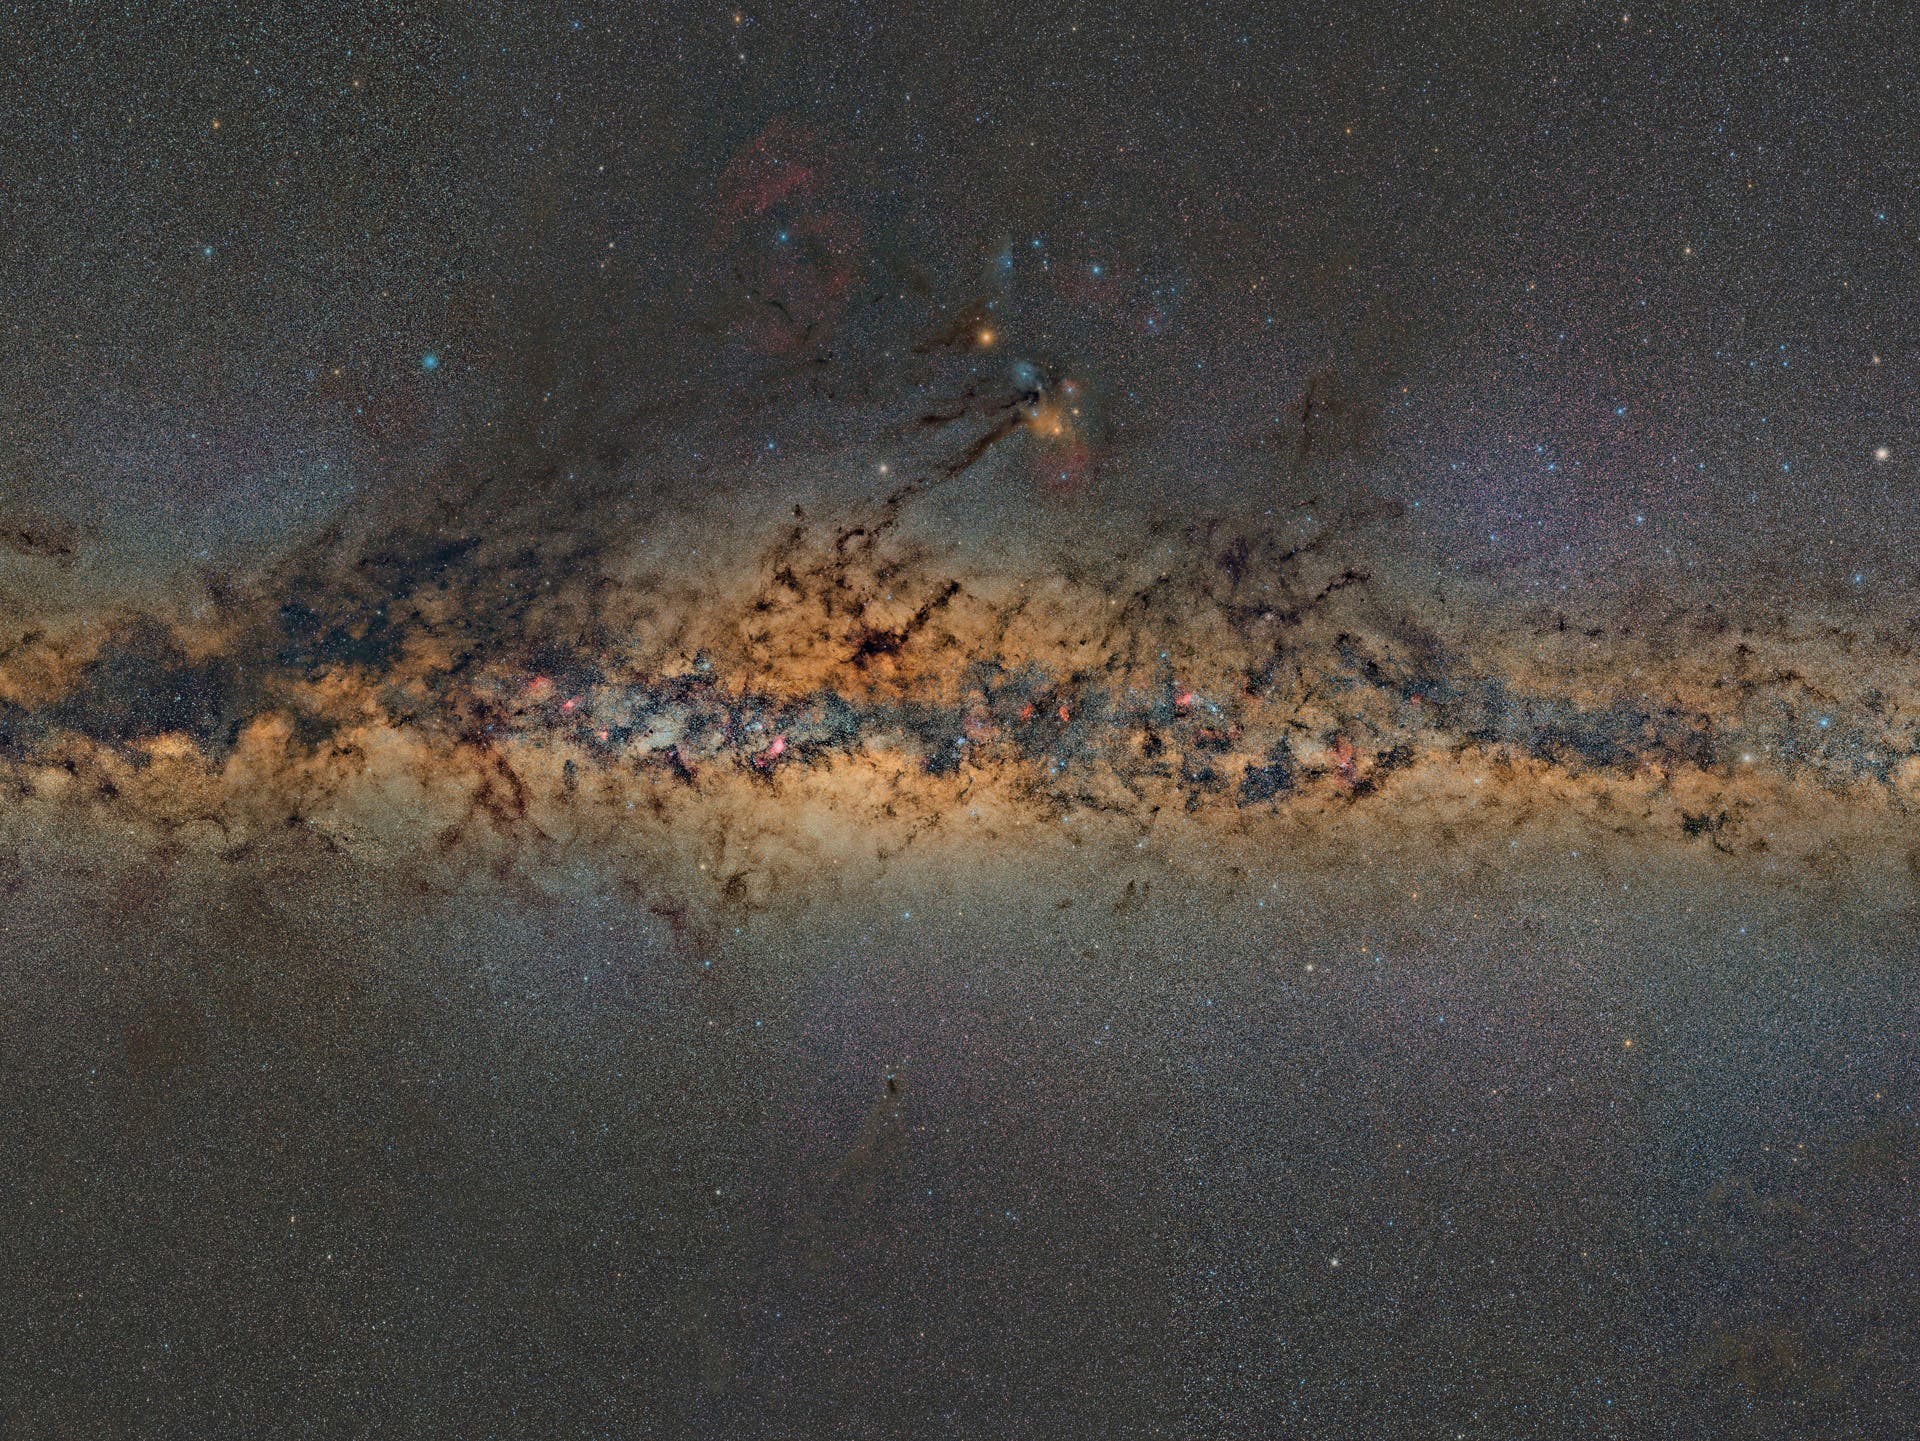 Mosaik des zentralen Teils der Milchstraße